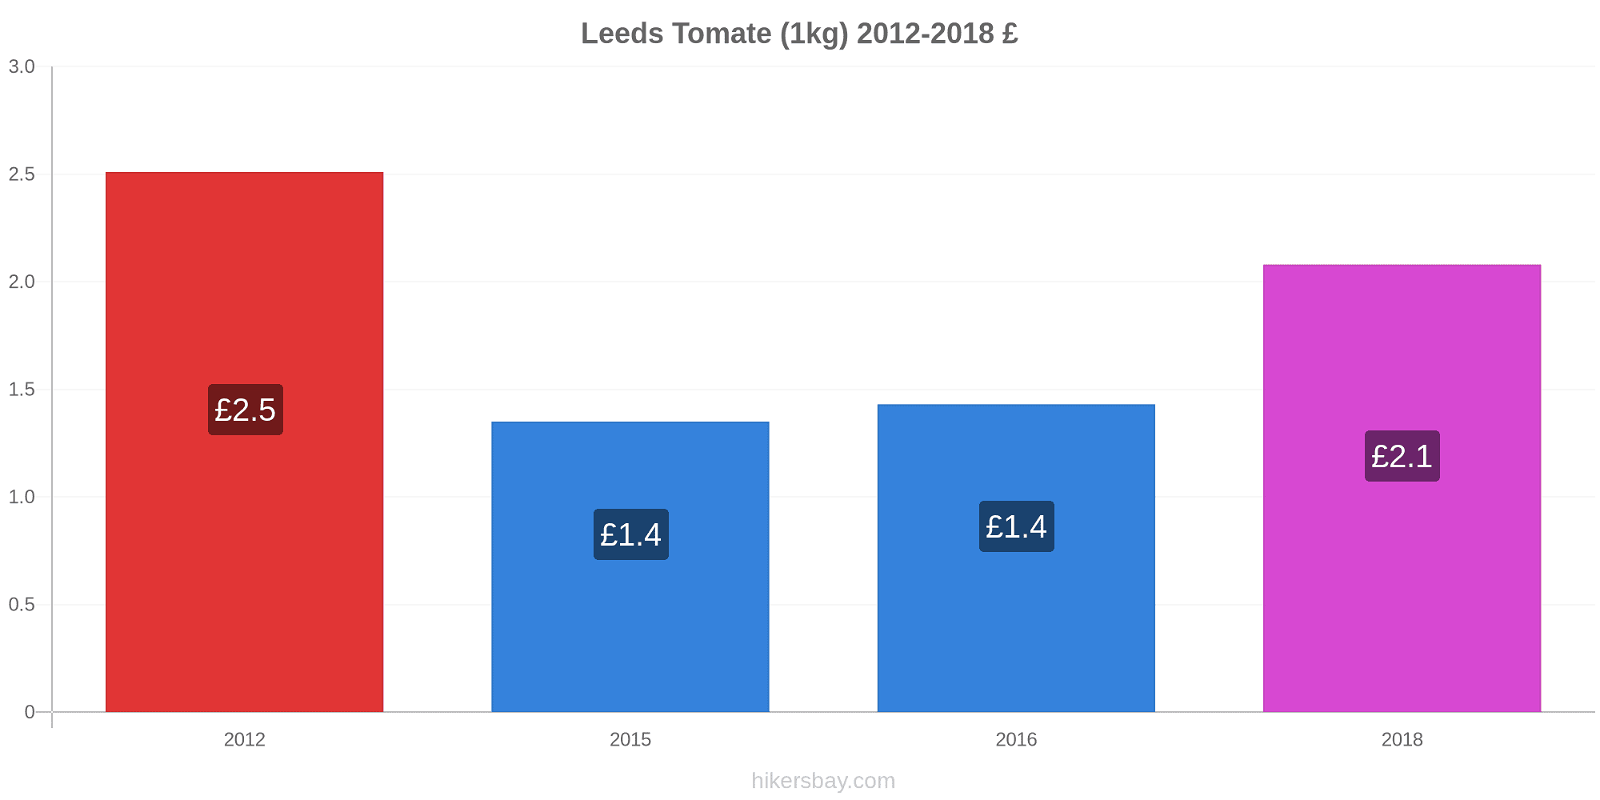 Leeds changements de prix Tomate (1kg) hikersbay.com